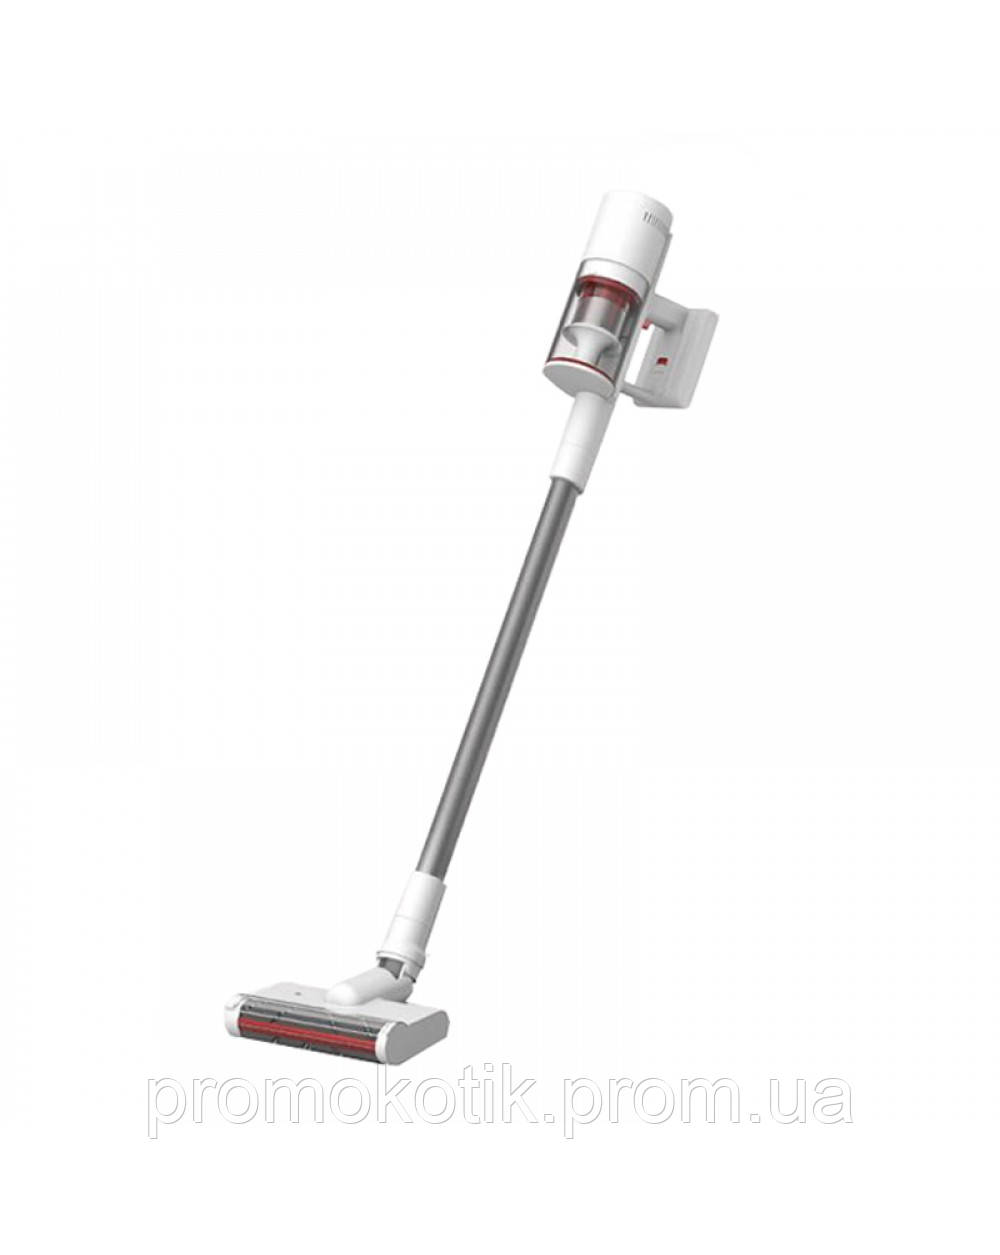 

Пылесос Xiaomi Shunzao Z11 Pro Vacuum Cleaner White PK, КОД: 2749144, Белый